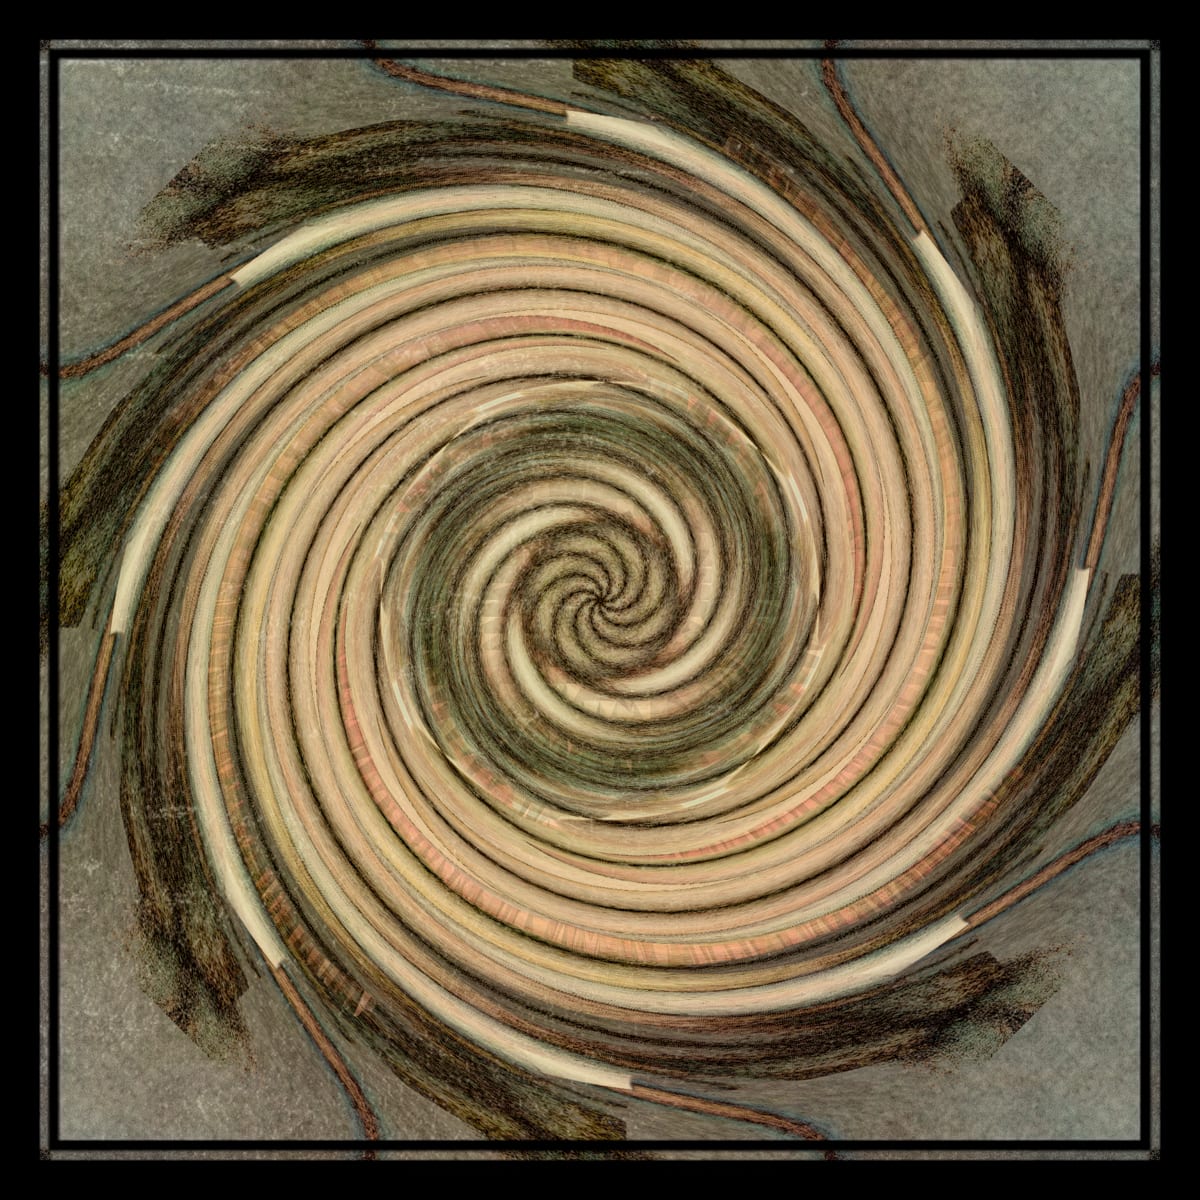 Nina's Spiral 1 